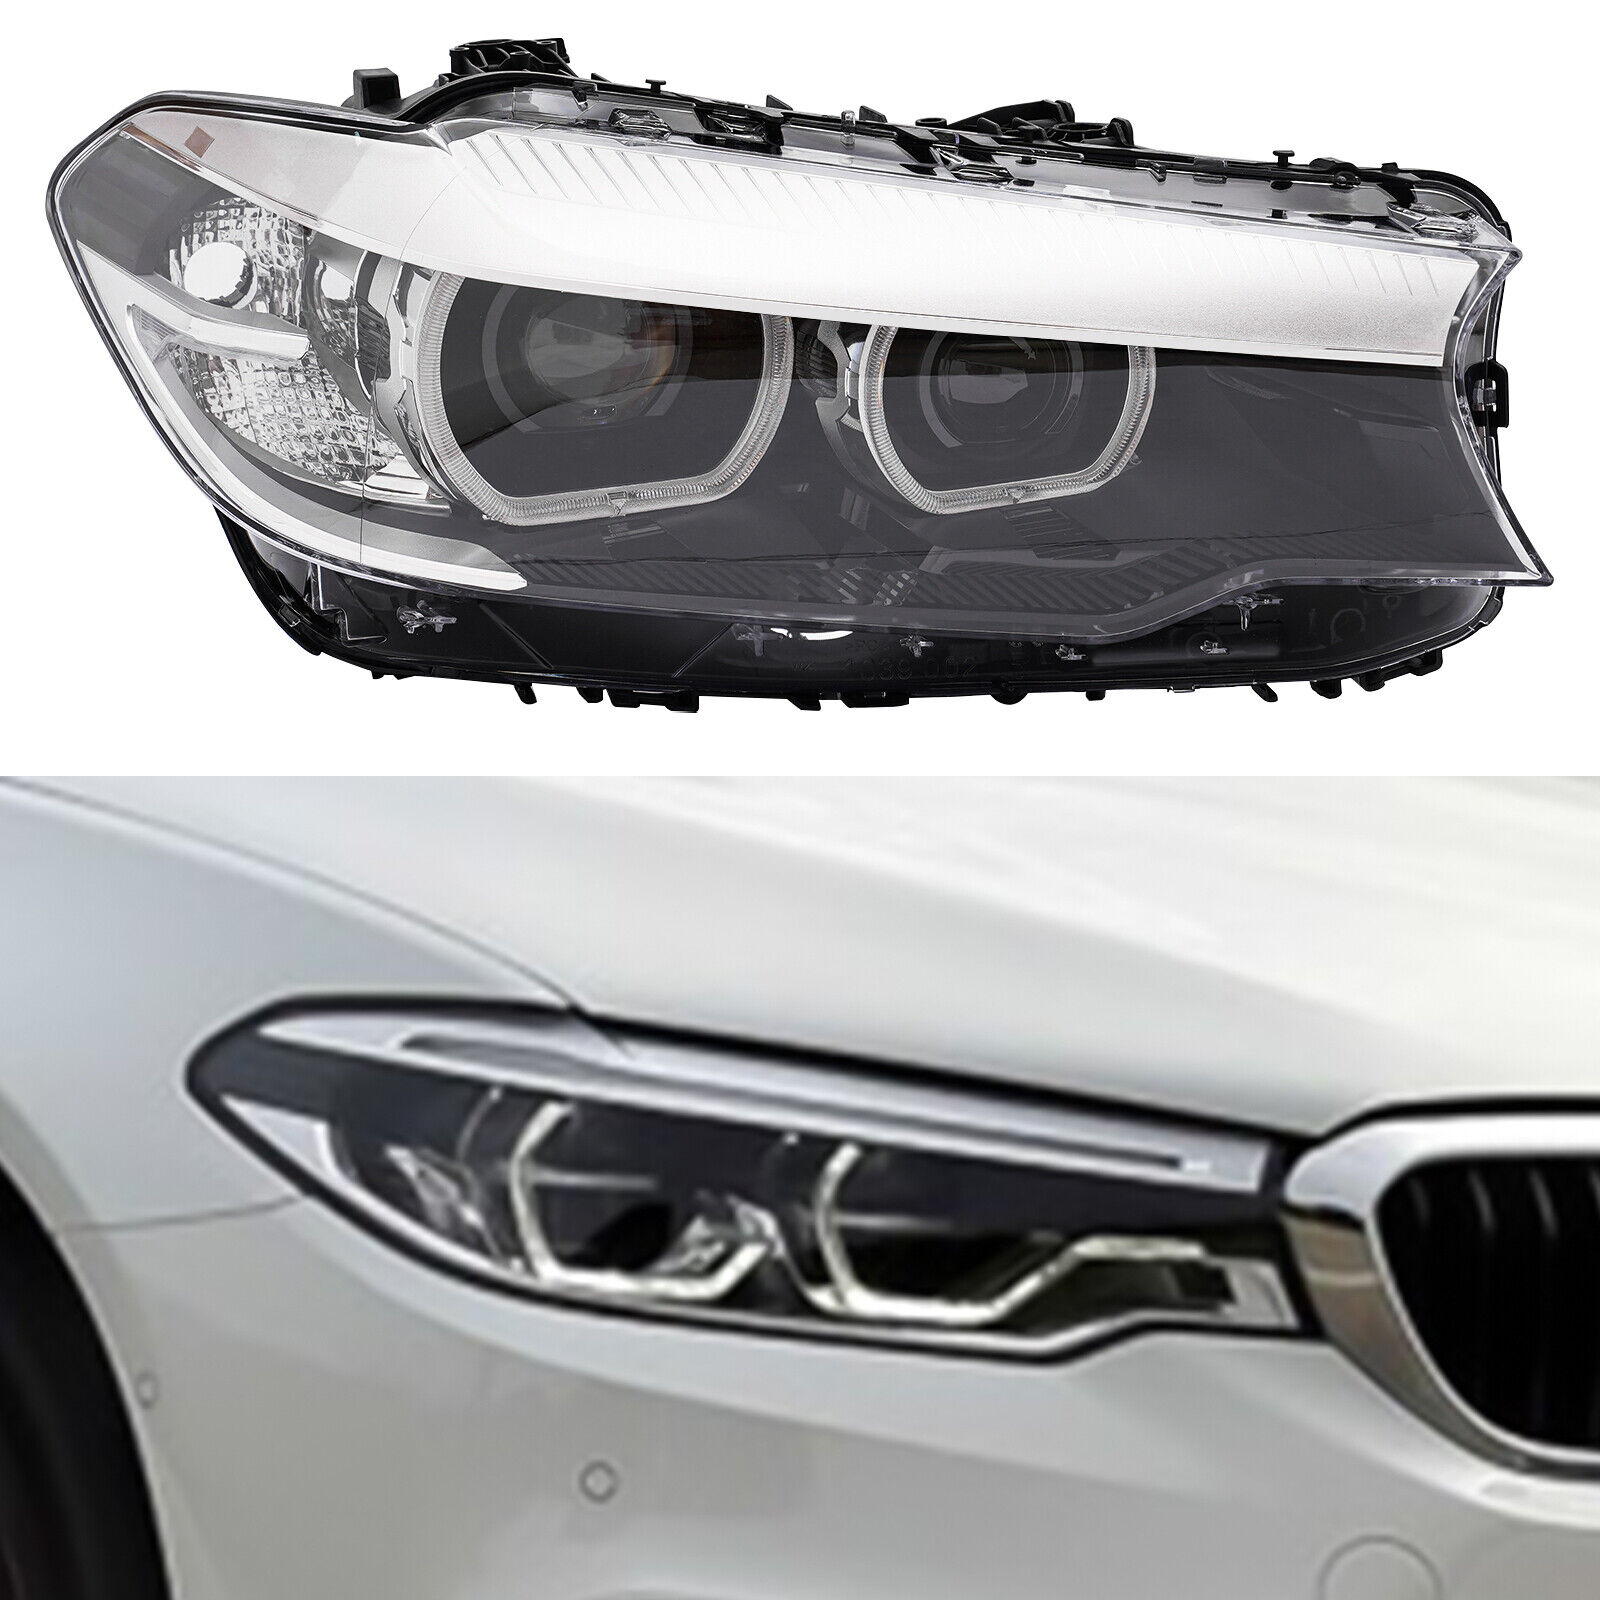 Passenger LED Headlight For 2017 2018 2019 2020 BMW 5 Series G30 530i 540i M5